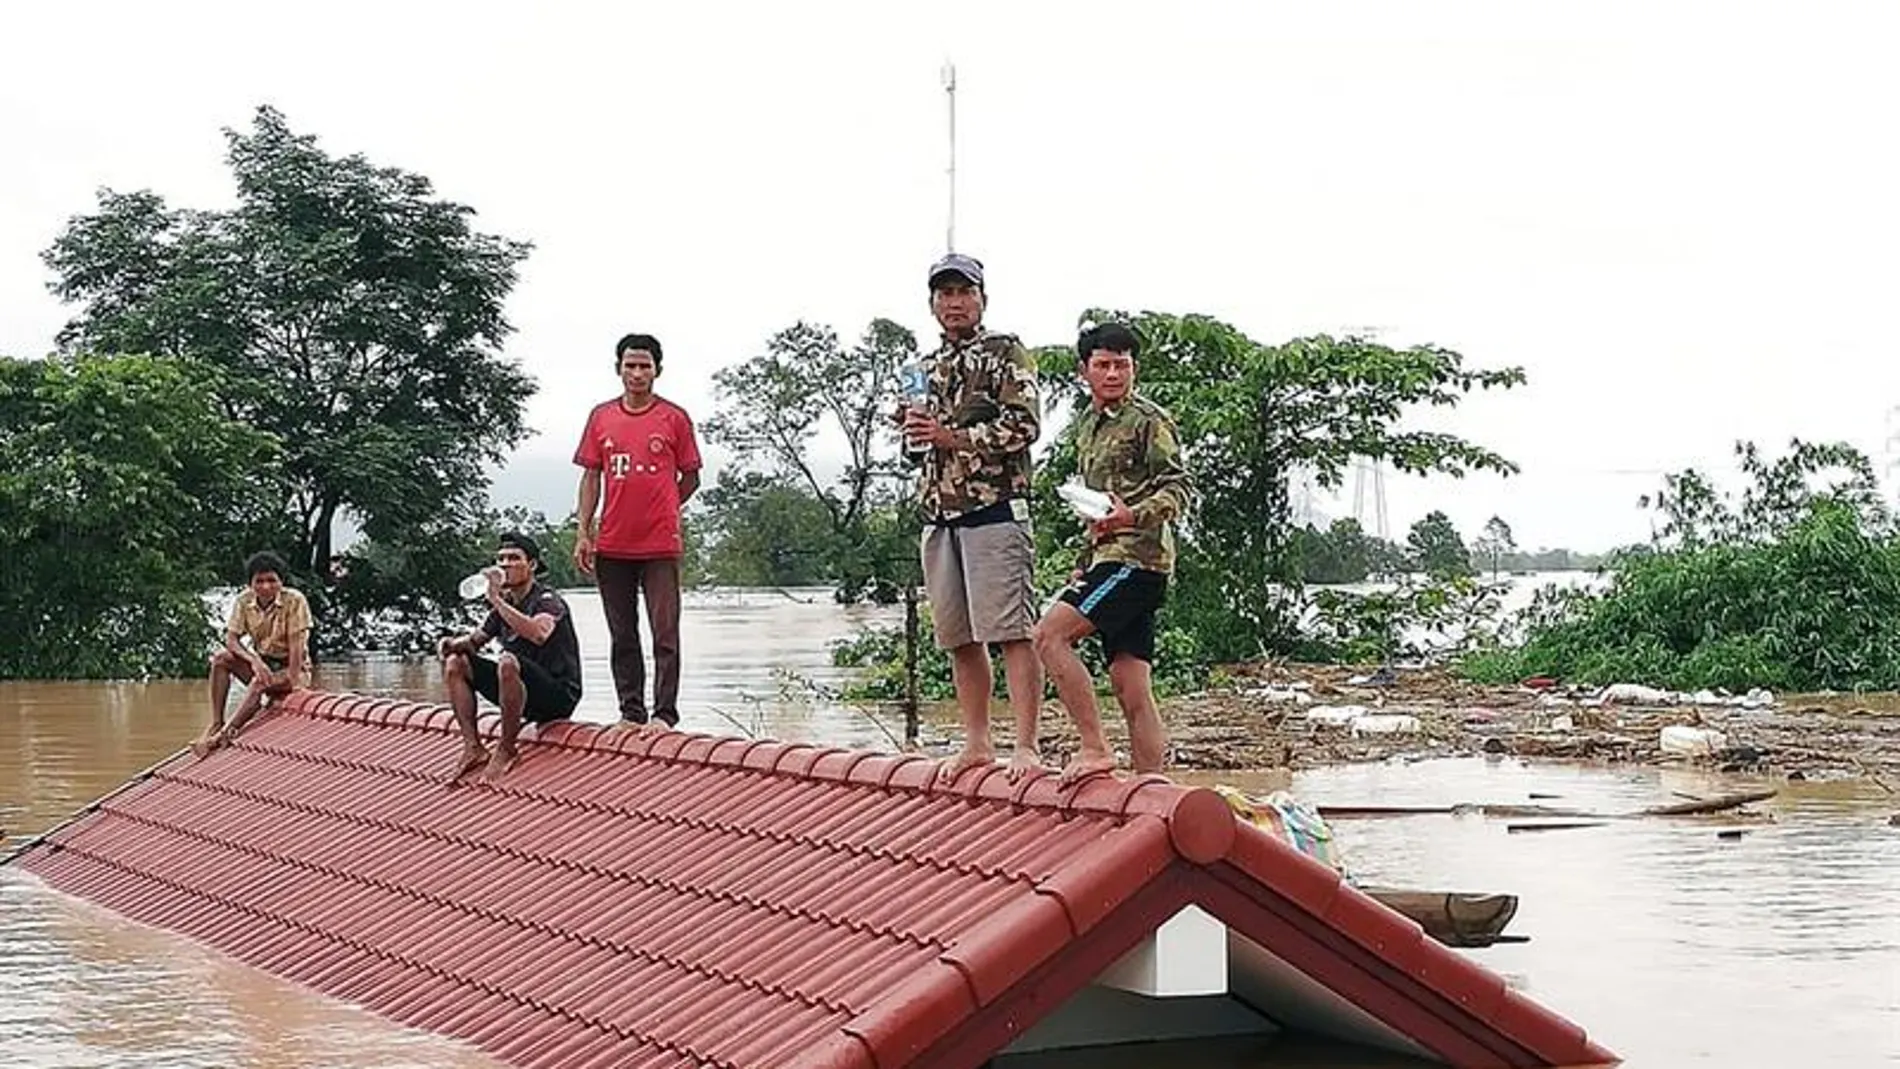 Un grupo de personas aguarda en lo alto de un tejado en una zona inundada tras el derrumbe de una presa 